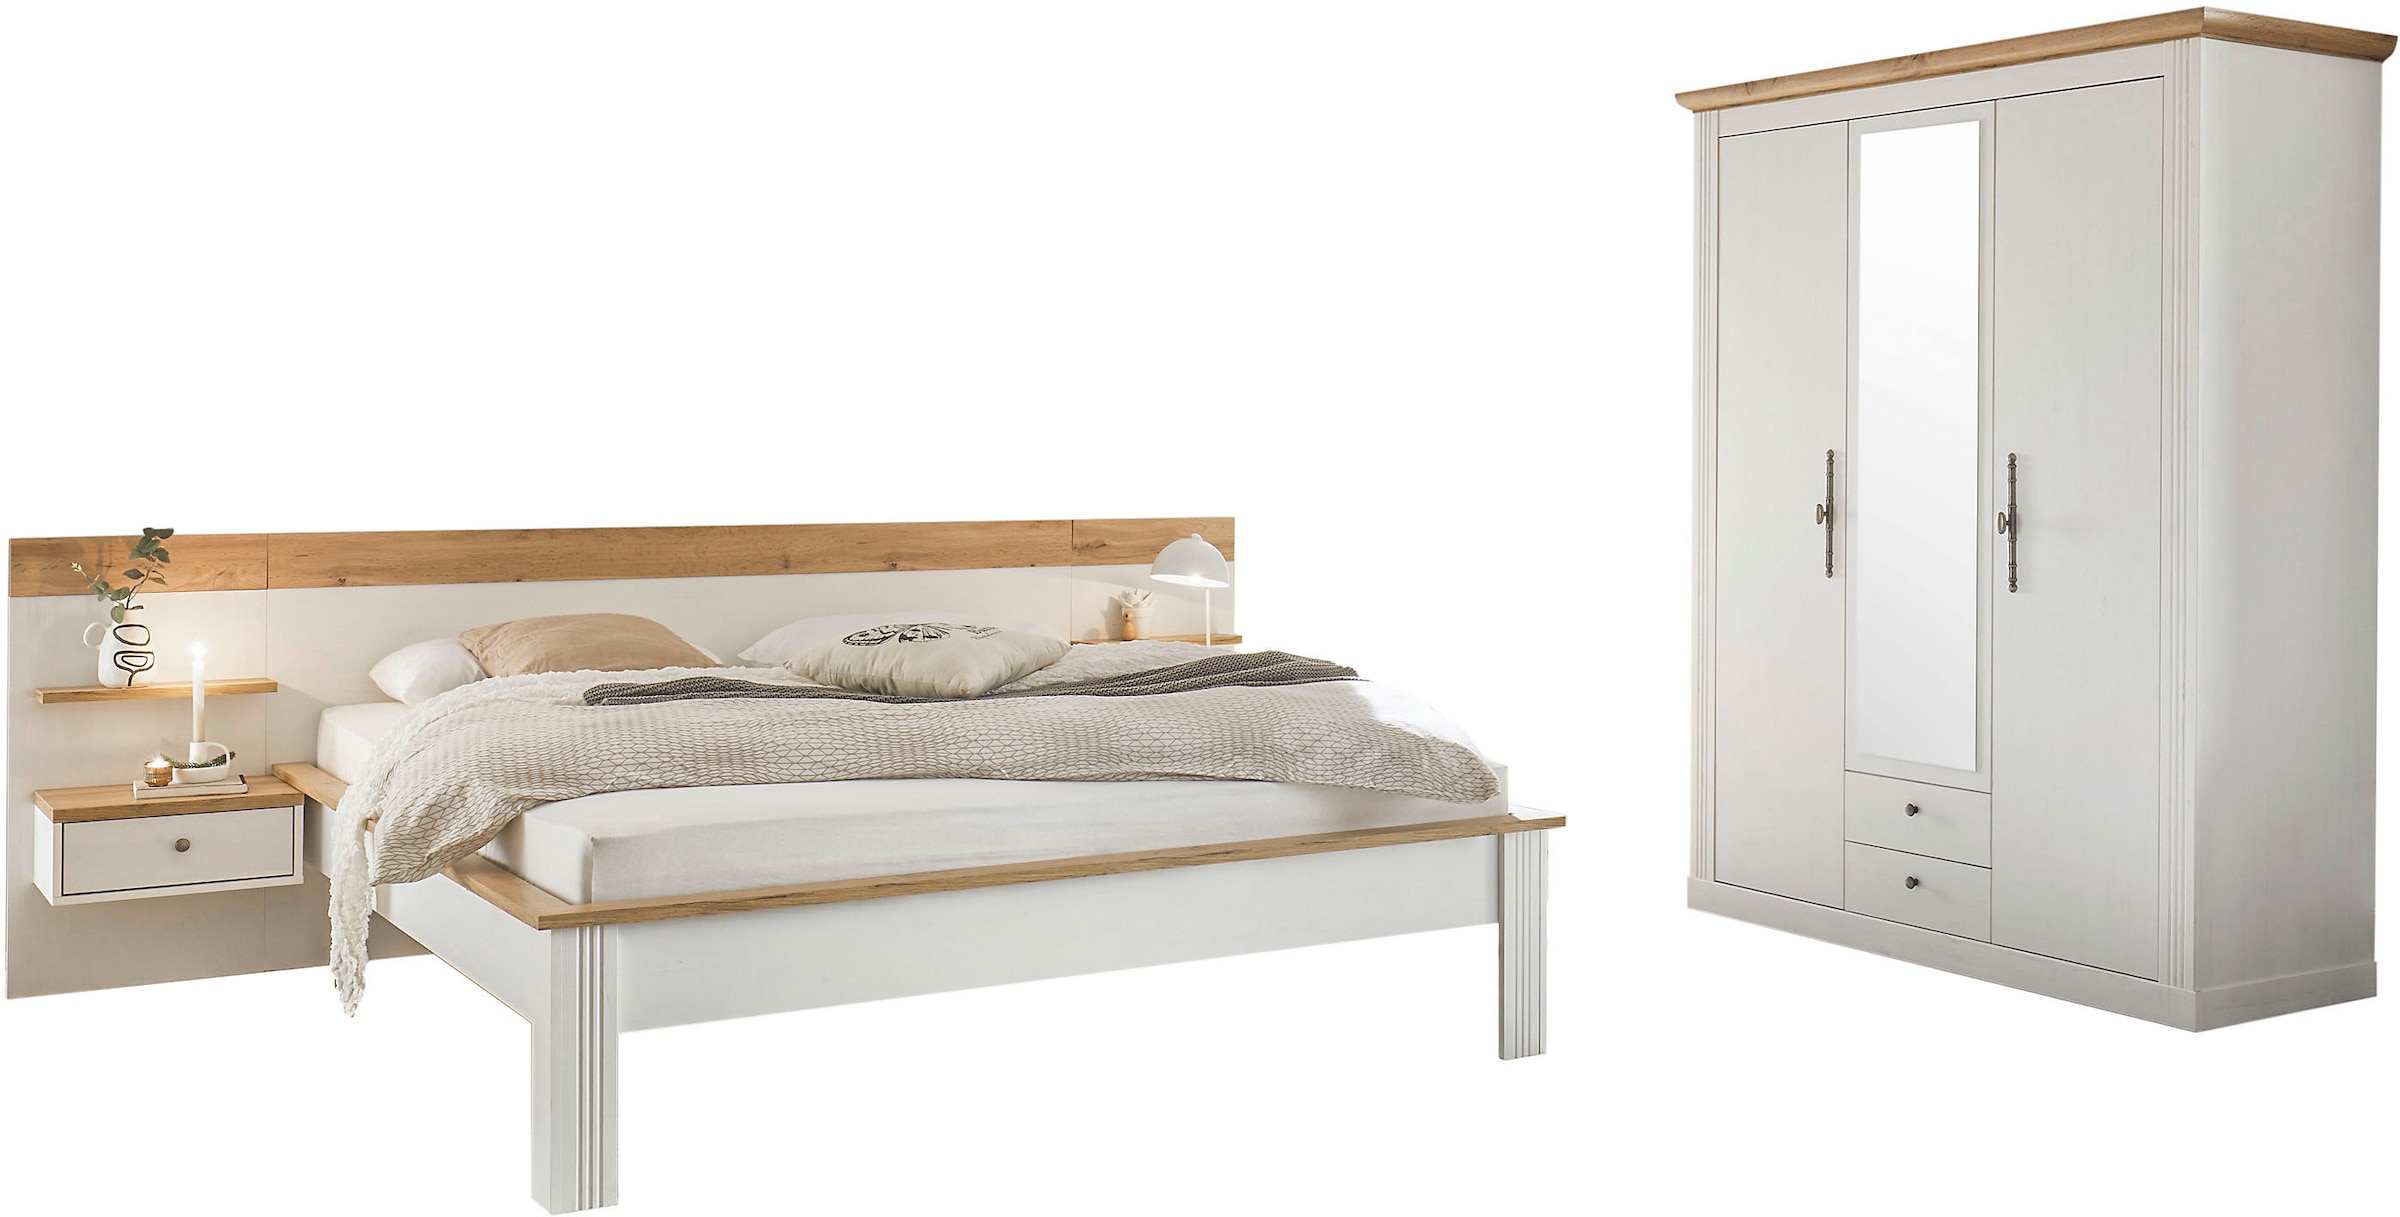 Home affaire Schlafzimmer-Set »Westminster«, beinhaltet 1 Bett, Kleiderschrank 3-türig und 2 Wandpaneele